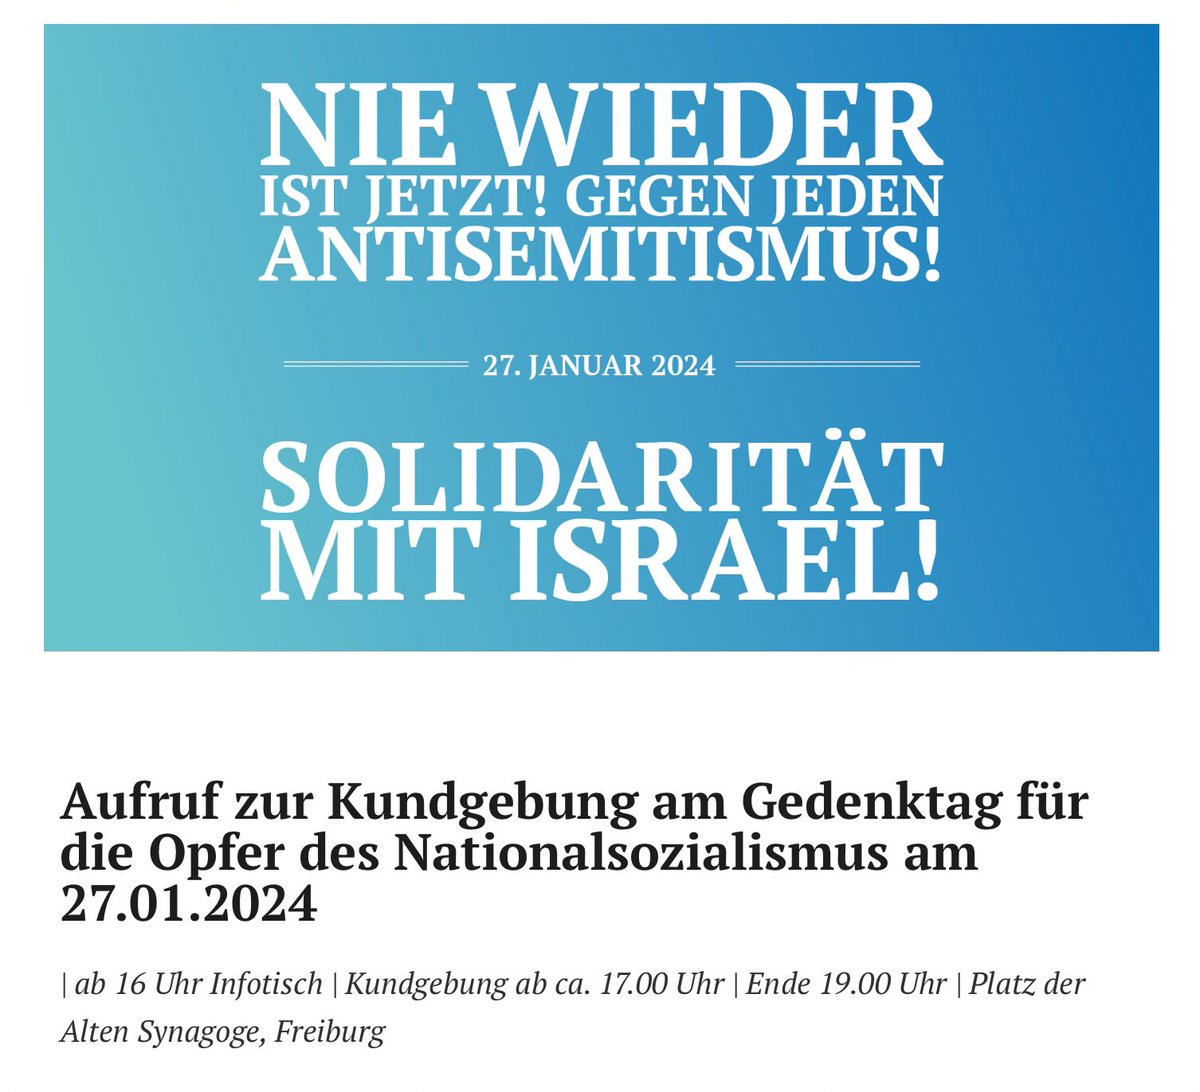 Das #Freiburg​er Bündnis gegen #Antisemitismus ruft am #HolocaustMemorialDay zur Kundgebung:

„#NieWieder ist jetzt!
#GegenJedenAntisemitismus!
#Solidarität mit #Israel!“

Sa, 27.01.24, Platz der alten Synagoge
ab 16 h Infotisch
ab 17 h Kundgebung